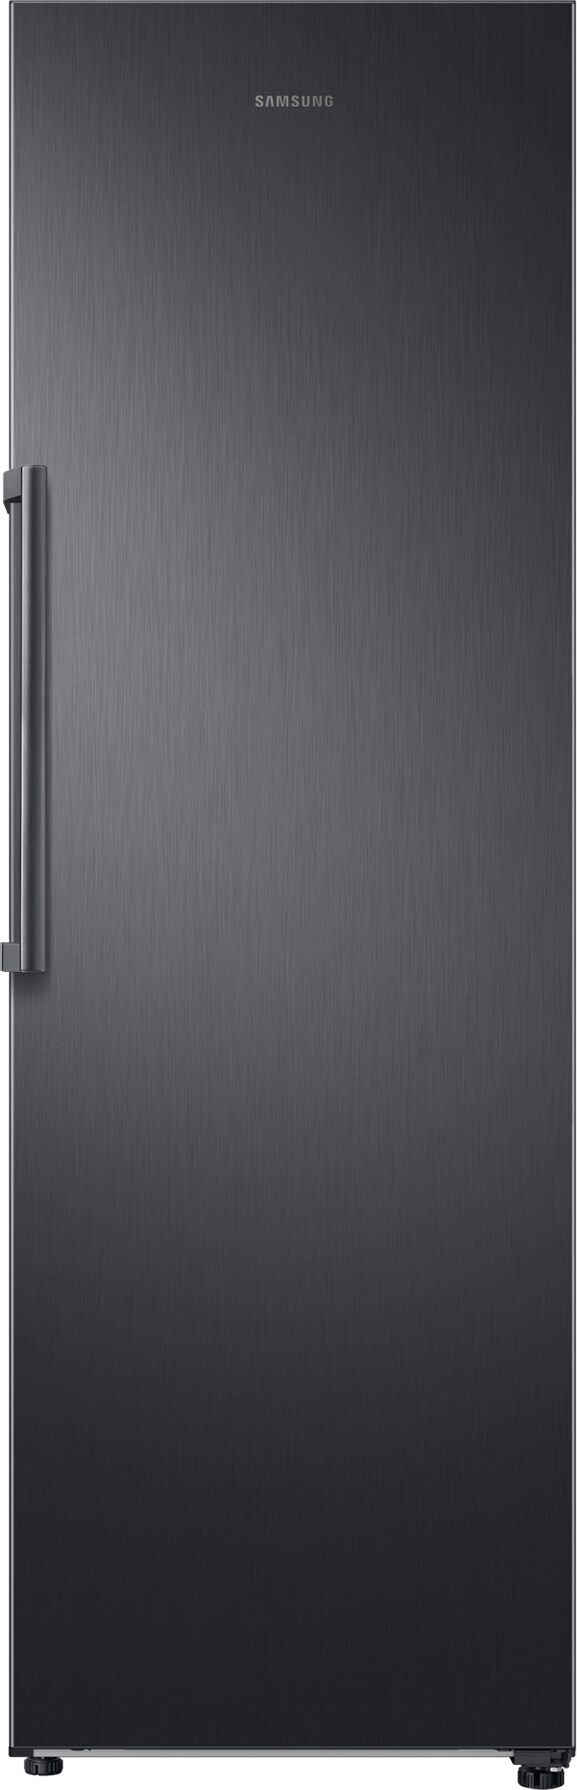 Billede af Samsung køleskab RR39M7010B1 (black stainless)